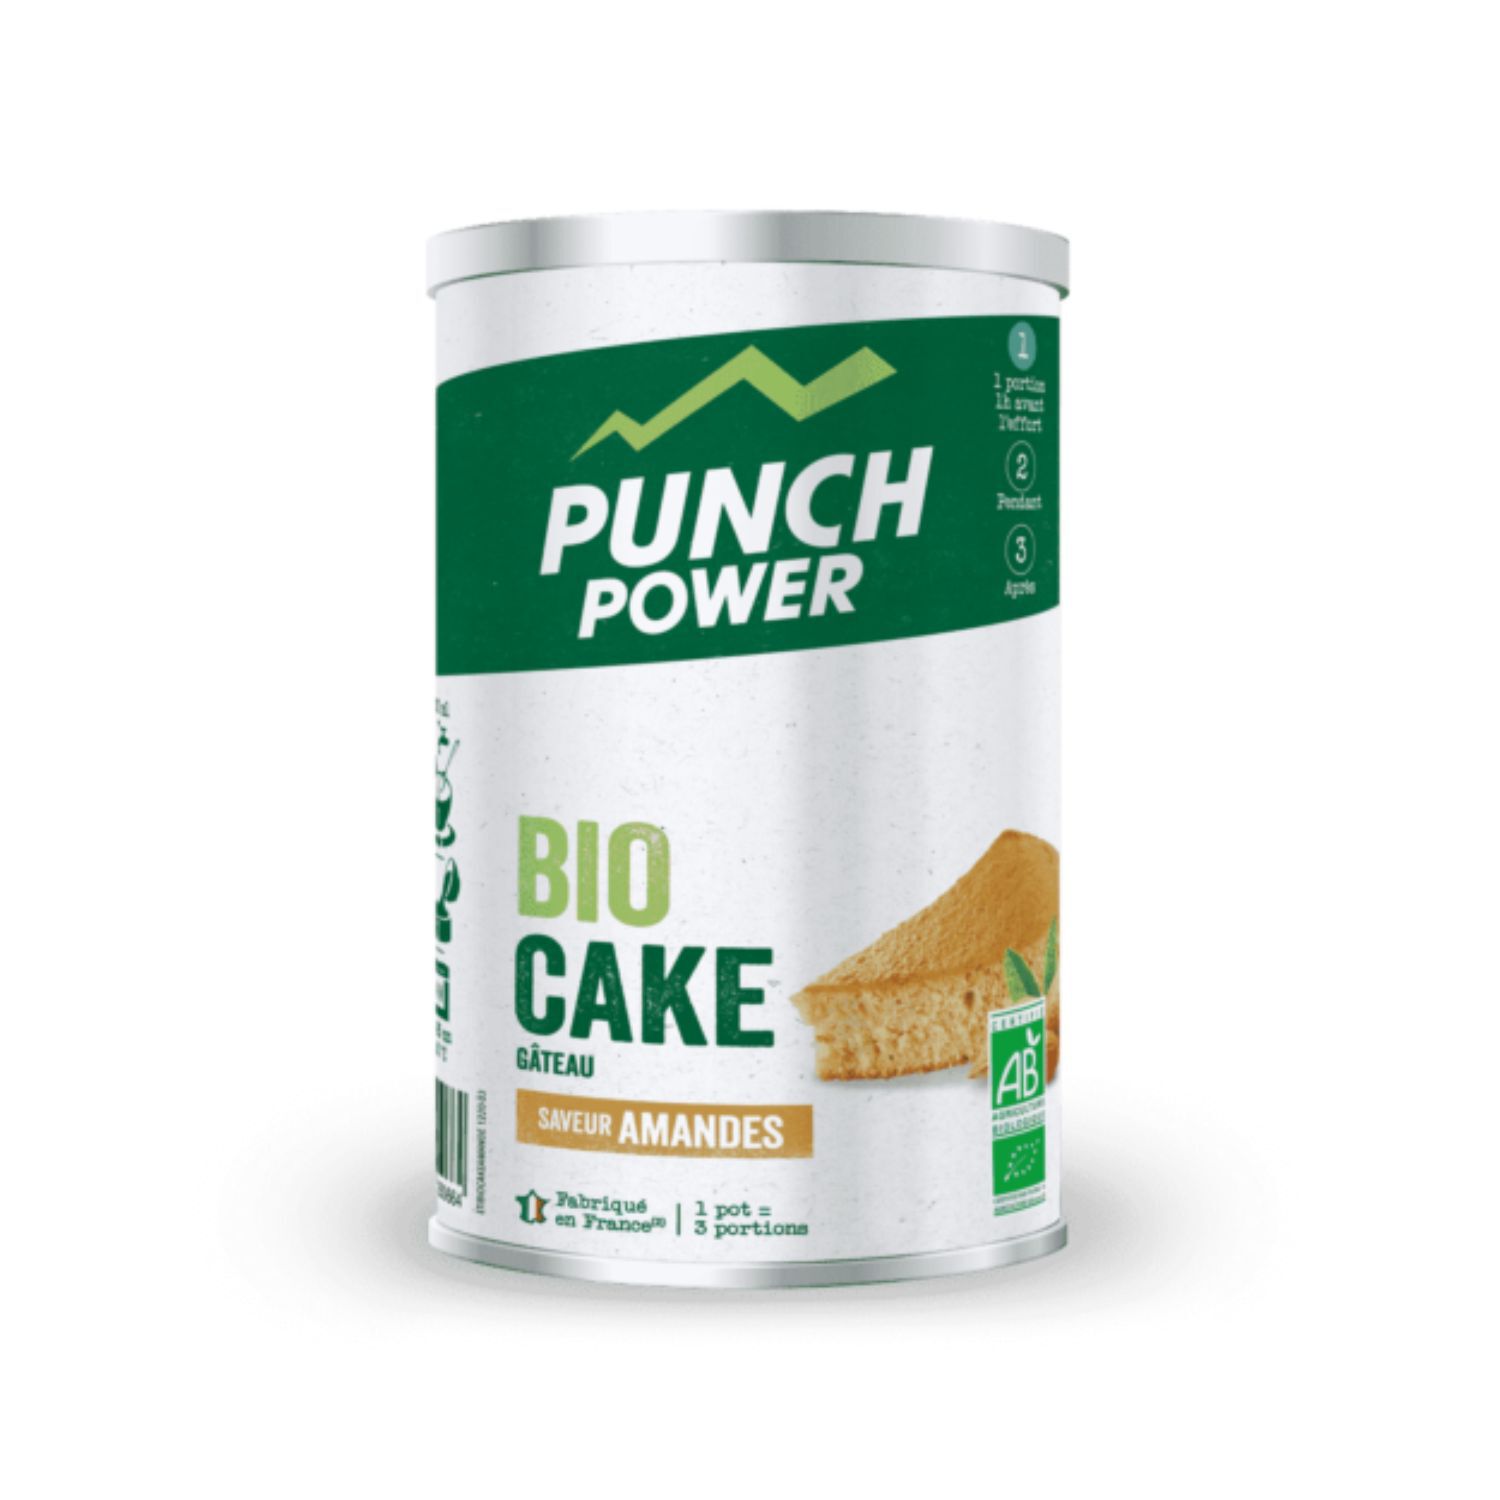 BIO CAKE - PUNCH POWER